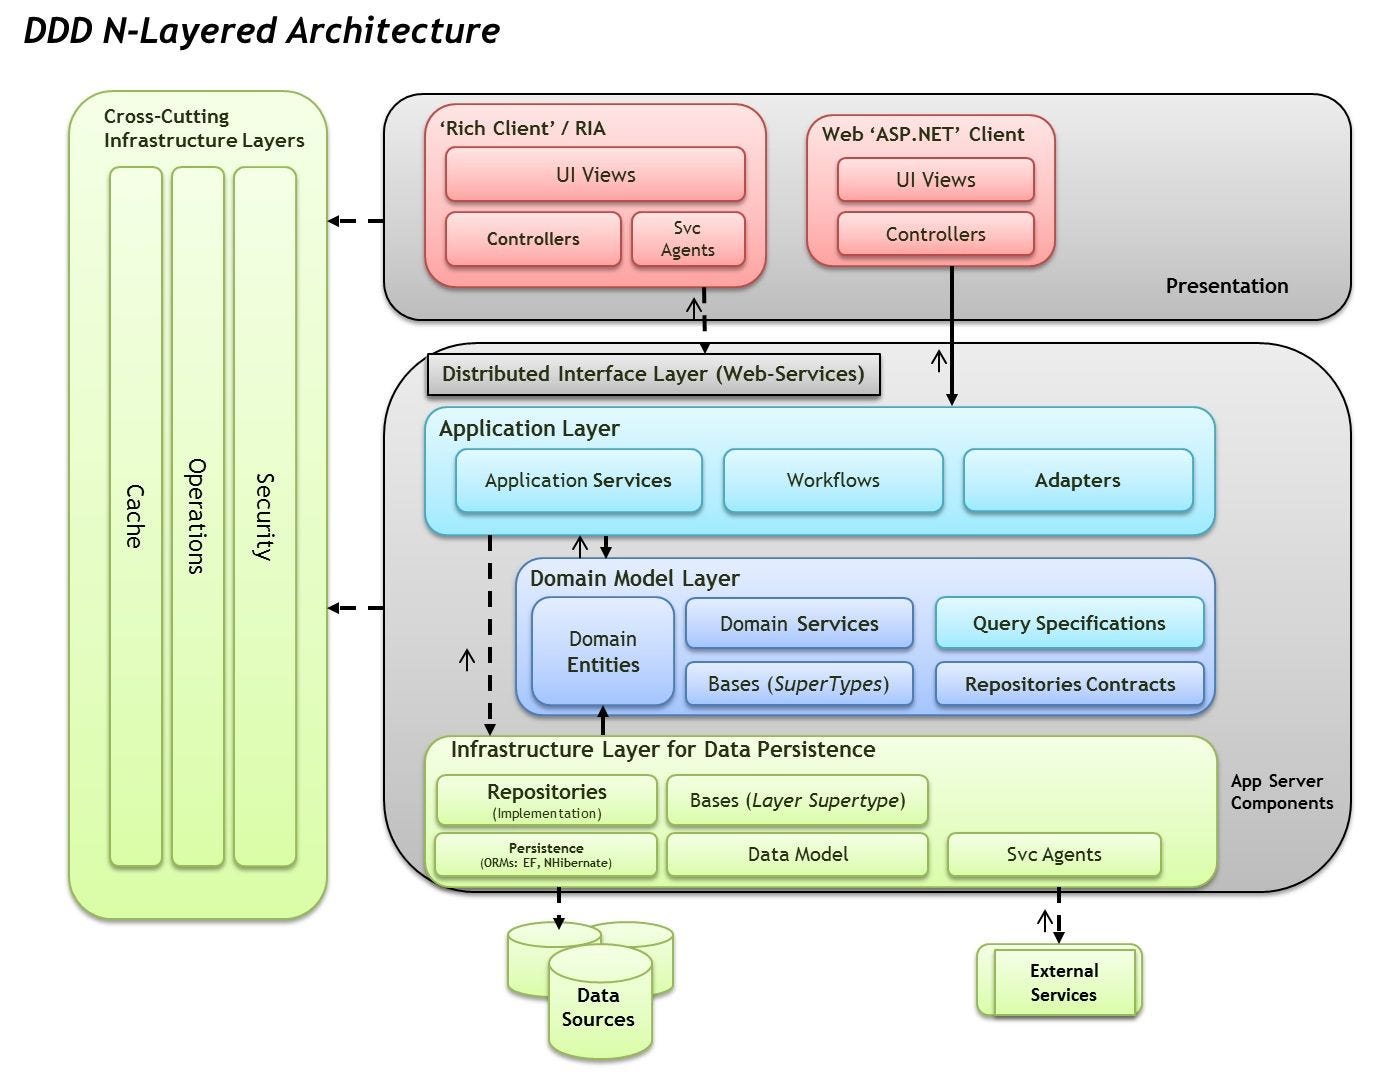 Arquitetura em camadas padrão aplicada ao DDD (Domain Driven Design)